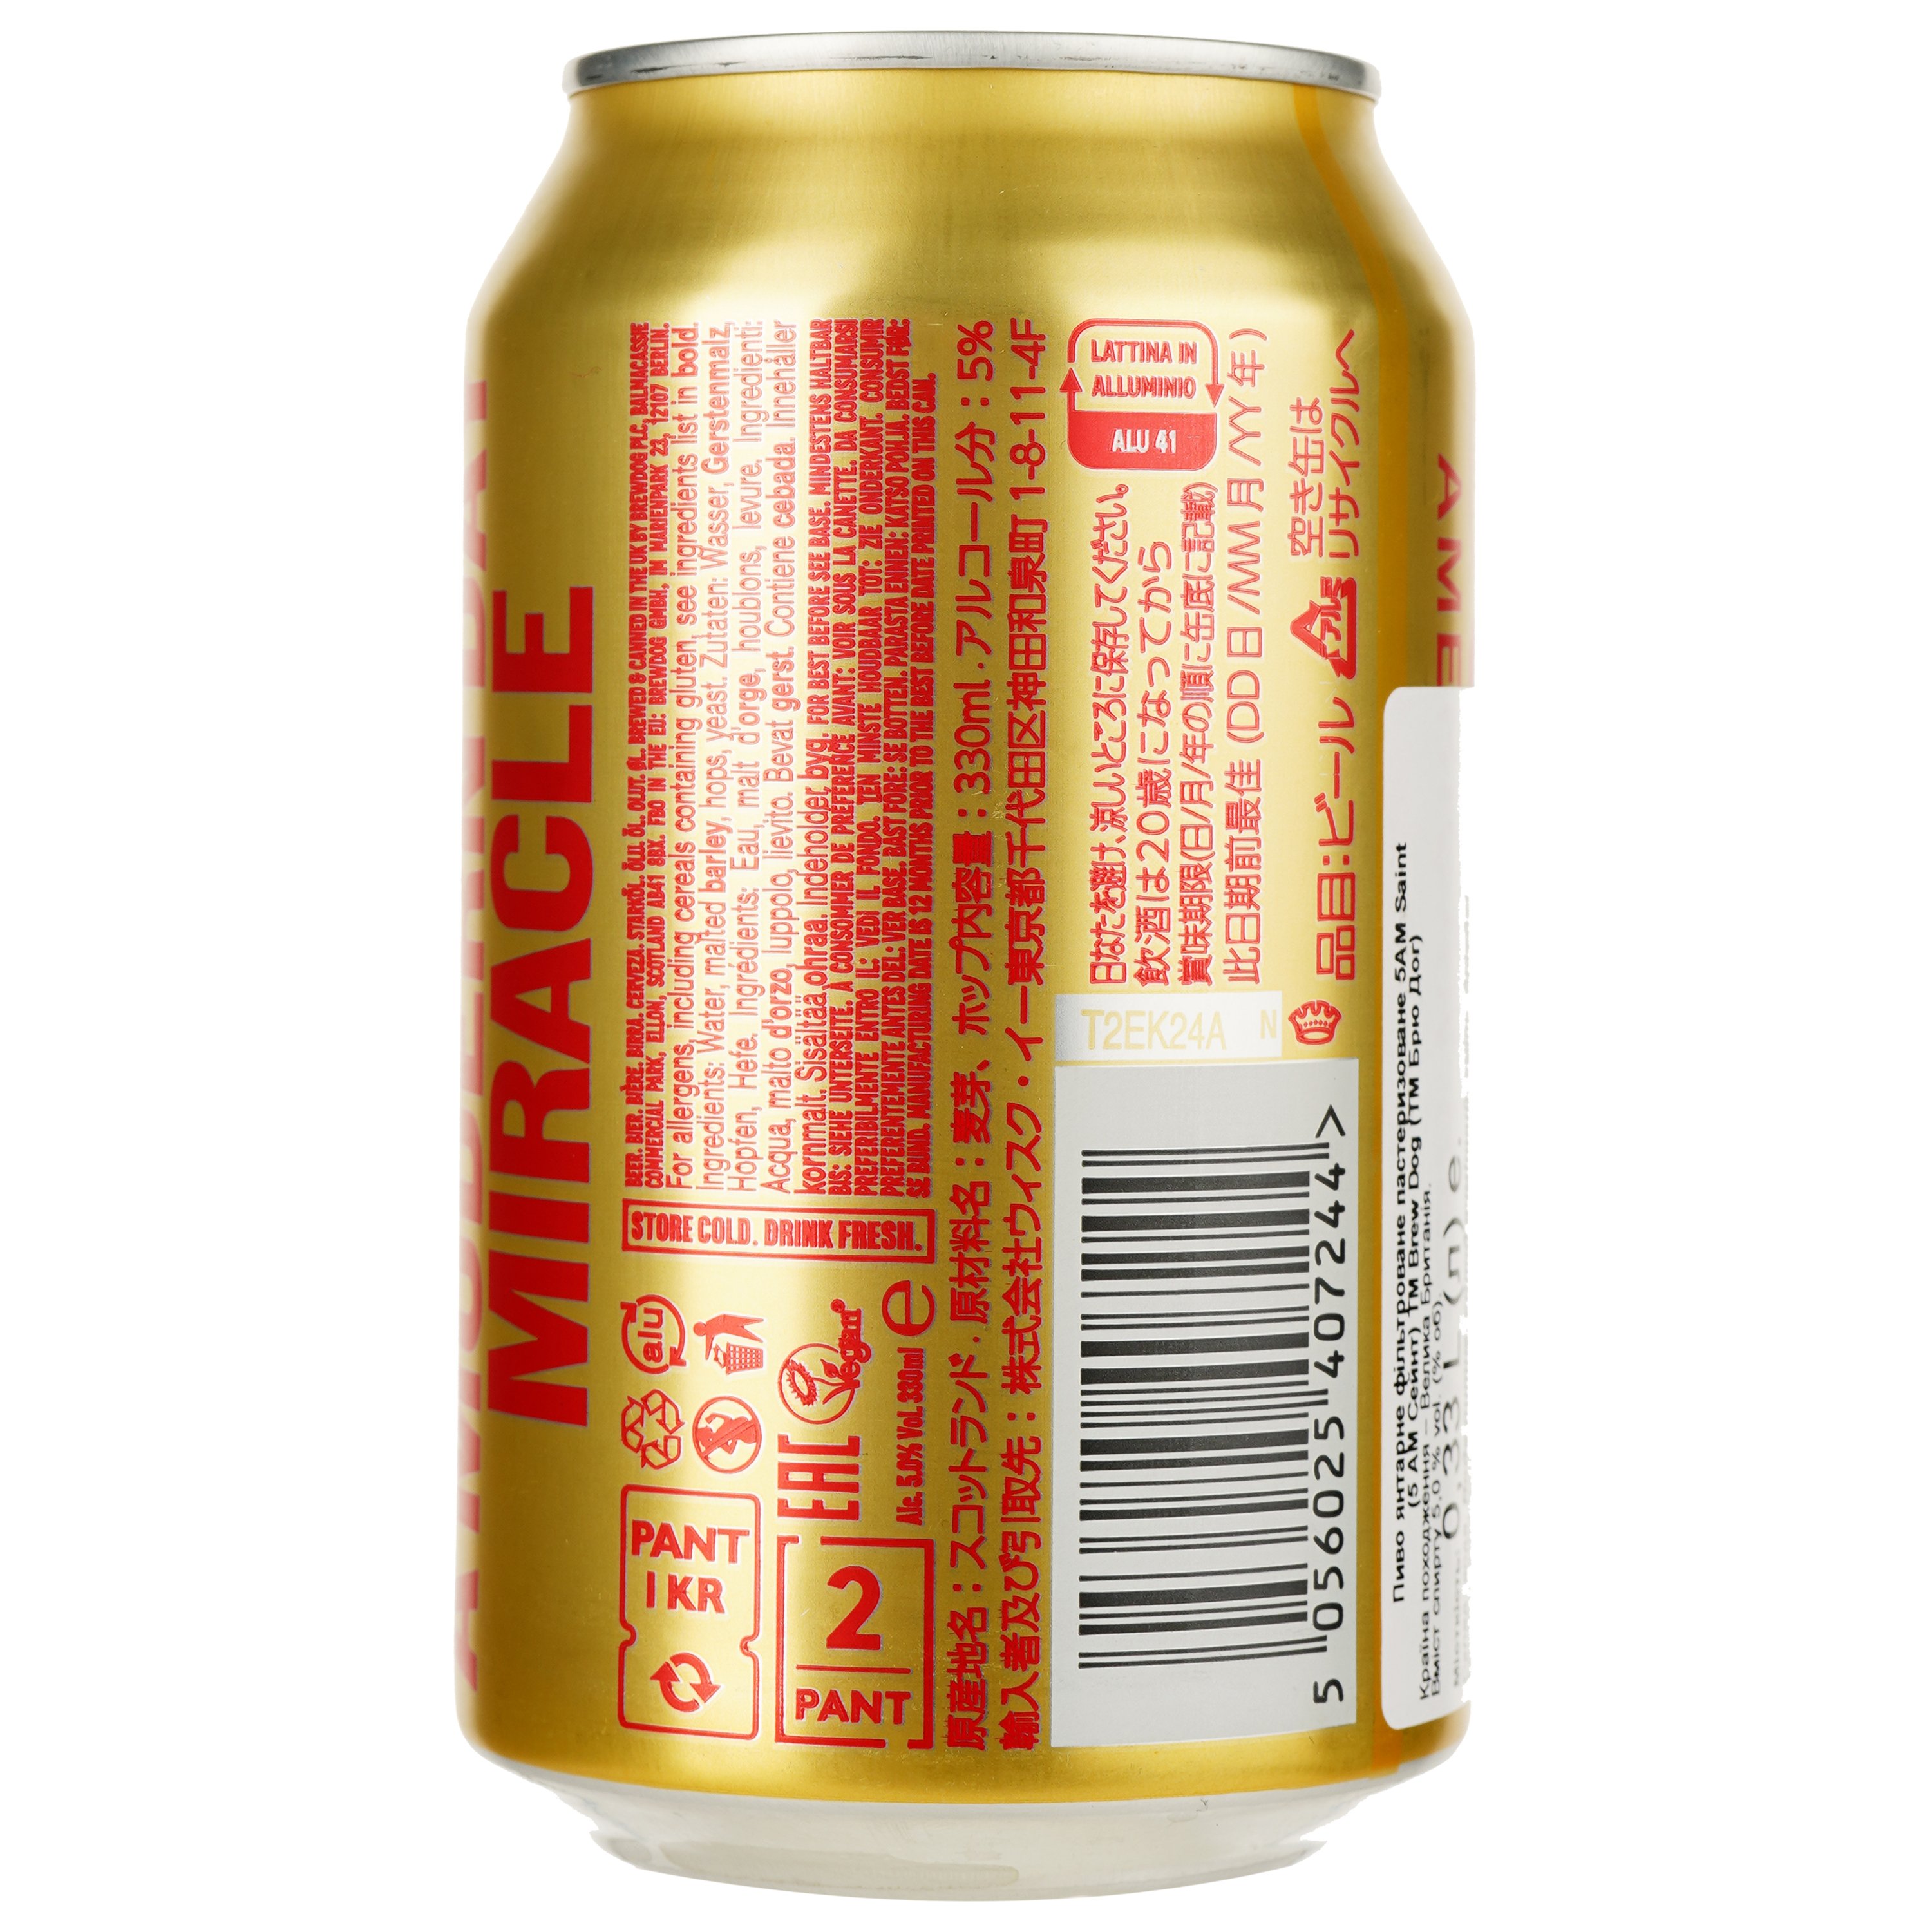 Пиво BrewDog 5AM Saint, червоне, фільтроване, 5%, 0,33 л (15641) - фото 2